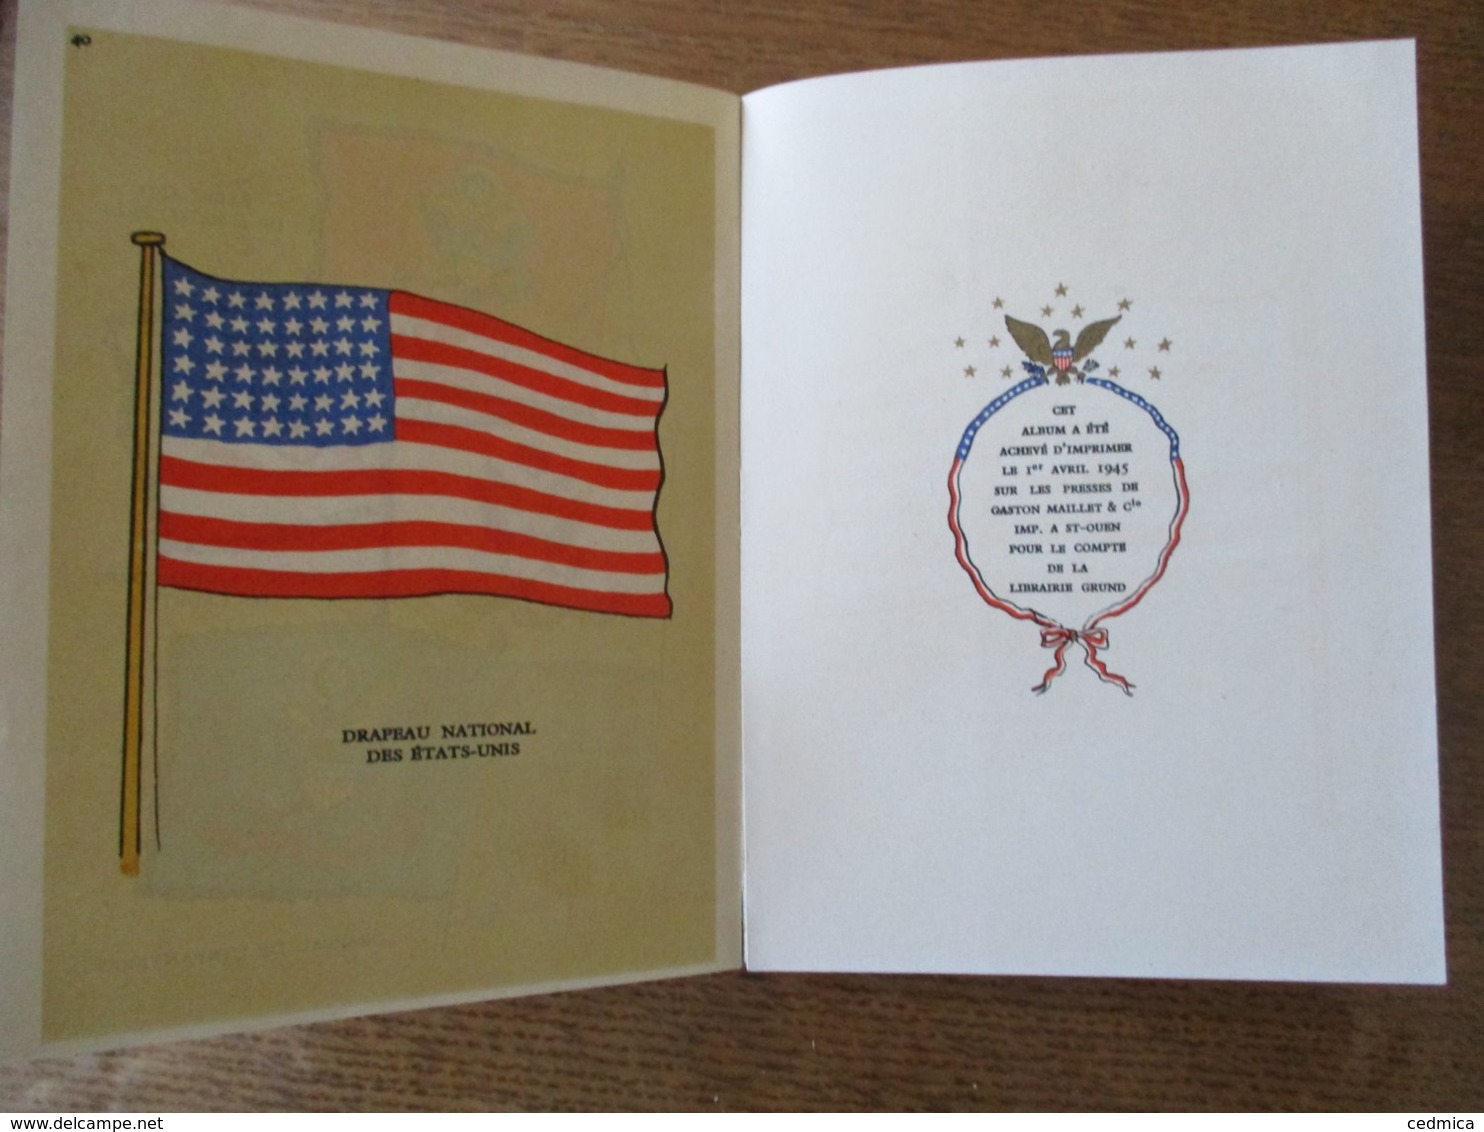 LES DRAPEAUX DES ETATS-UNIS  THE AMERICAN FLAGS (OLD GLORY) ALFRED RIGNY PIERRE NOURY 1945 LIBRAIRIE GRÜND